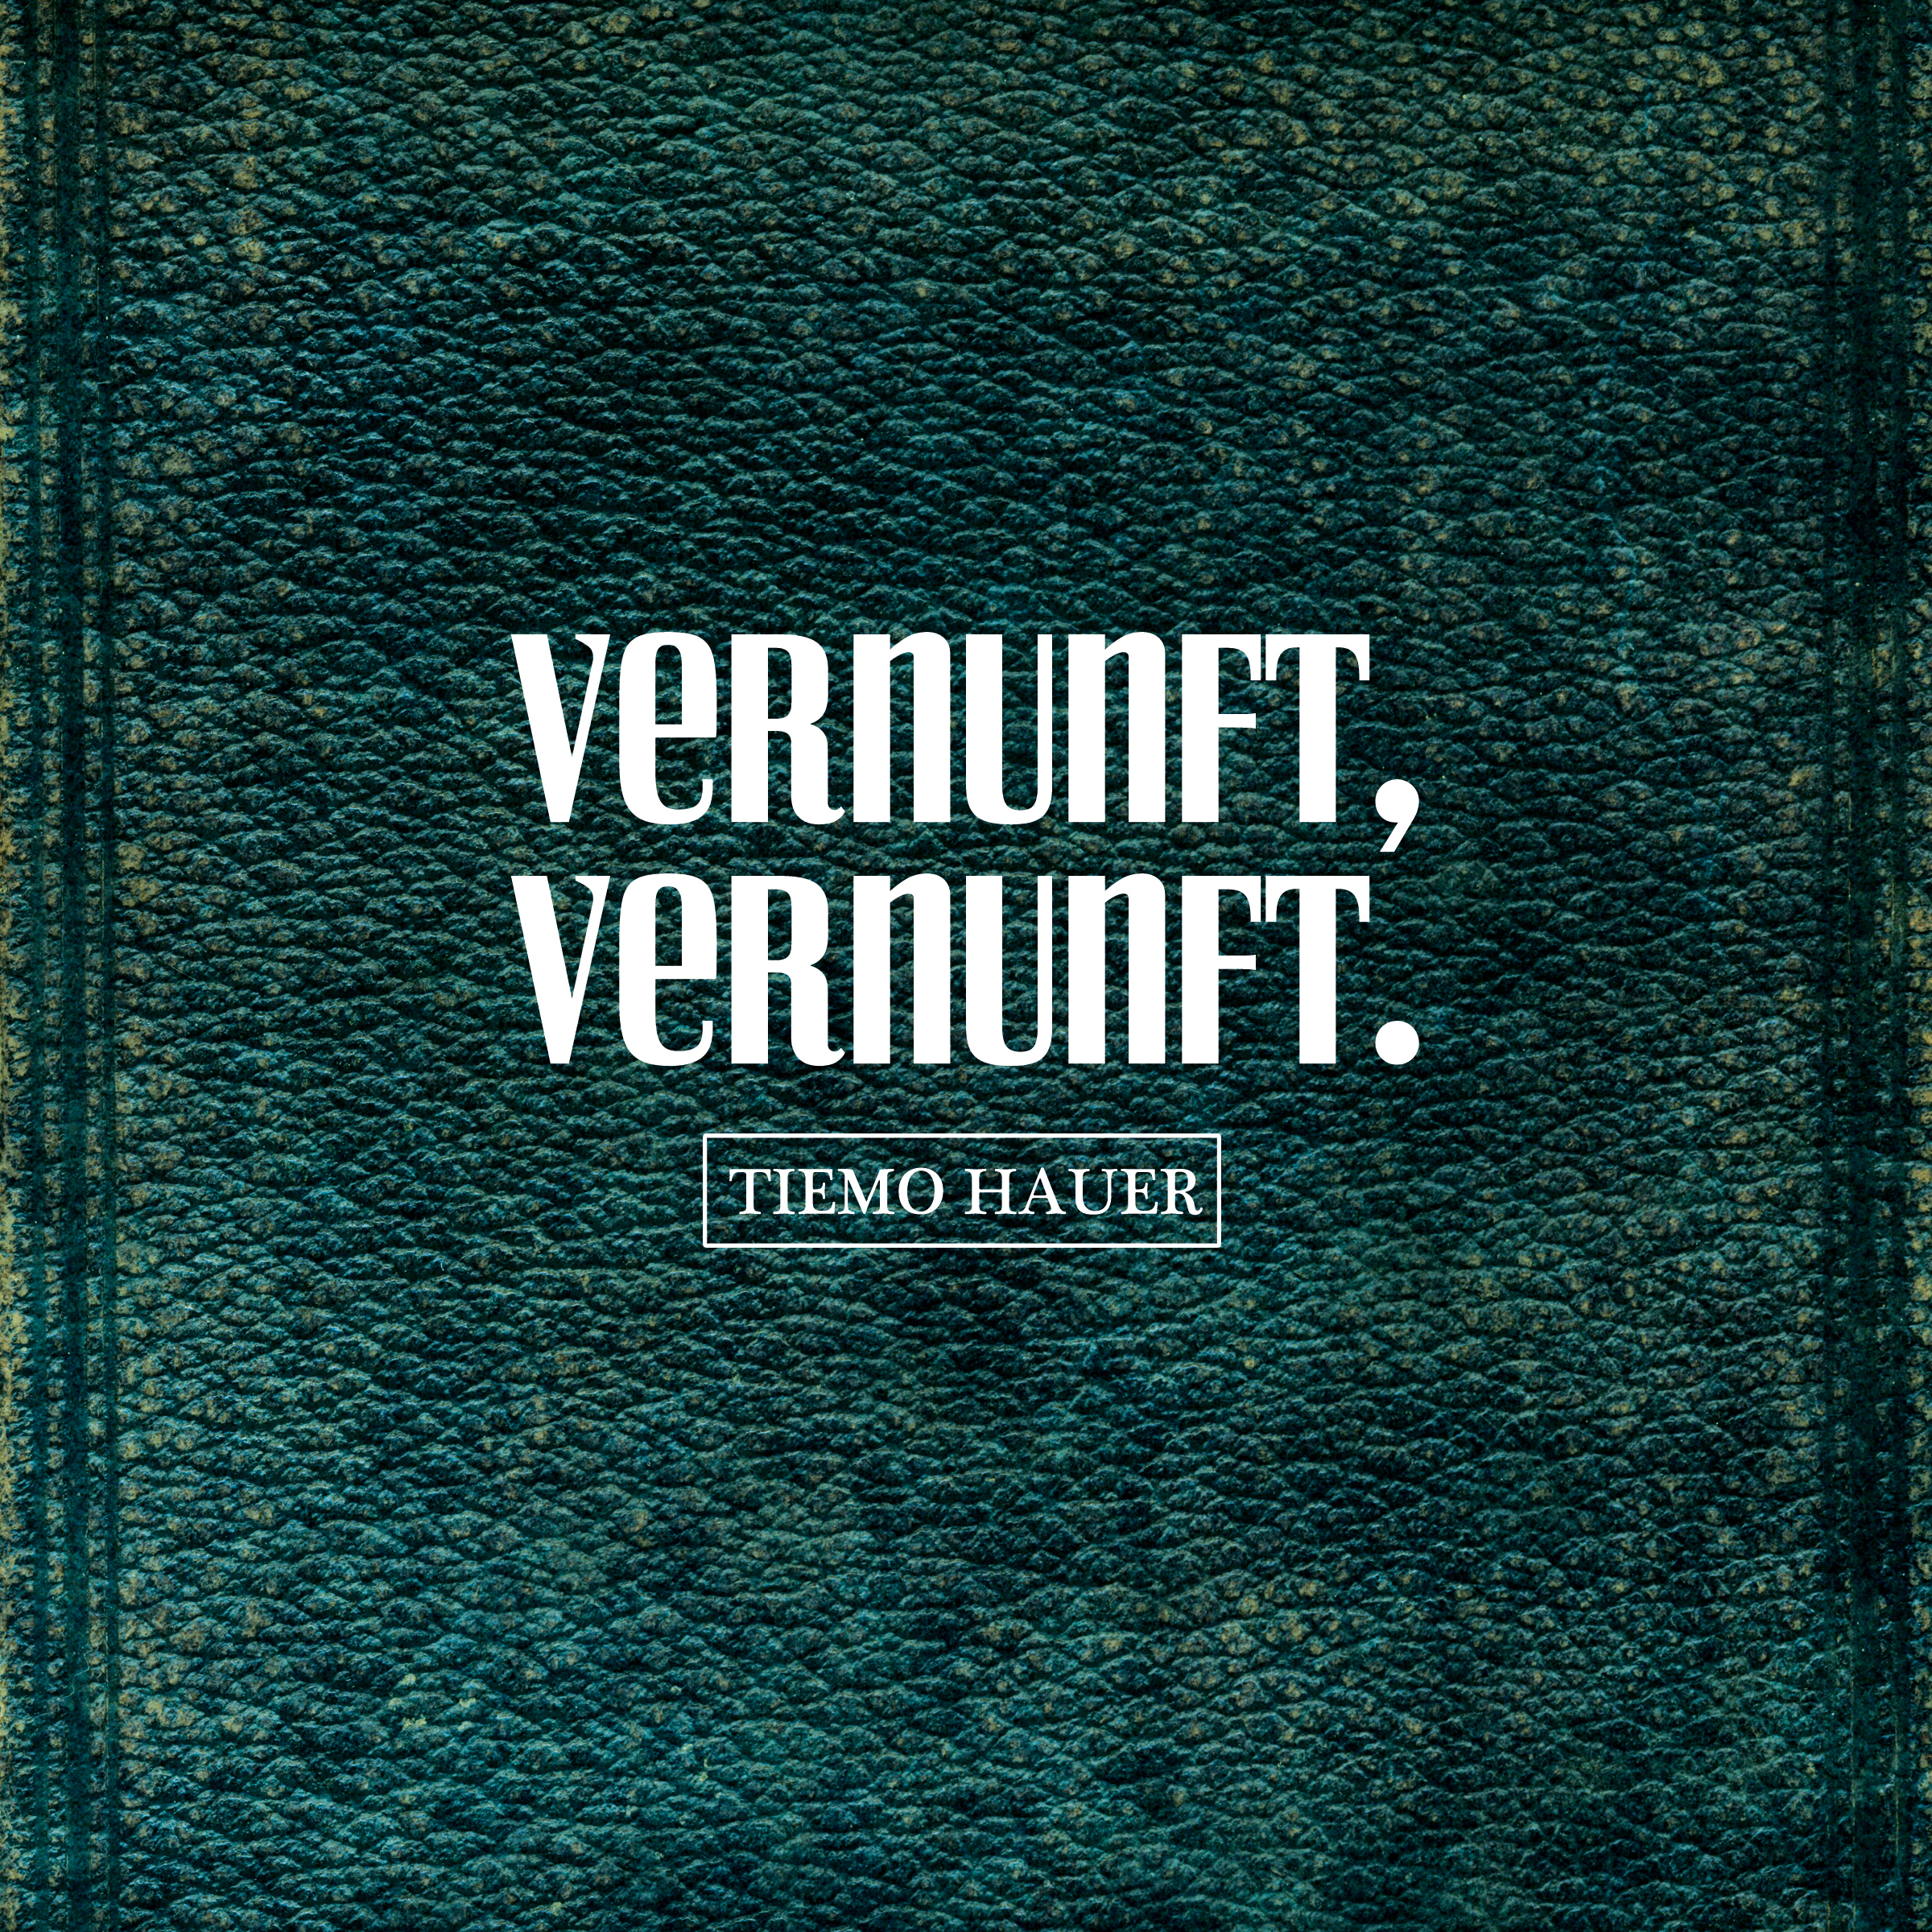 Tiemo Hauer - VERNUNFT, VERNUNFT. - (Vinyl)